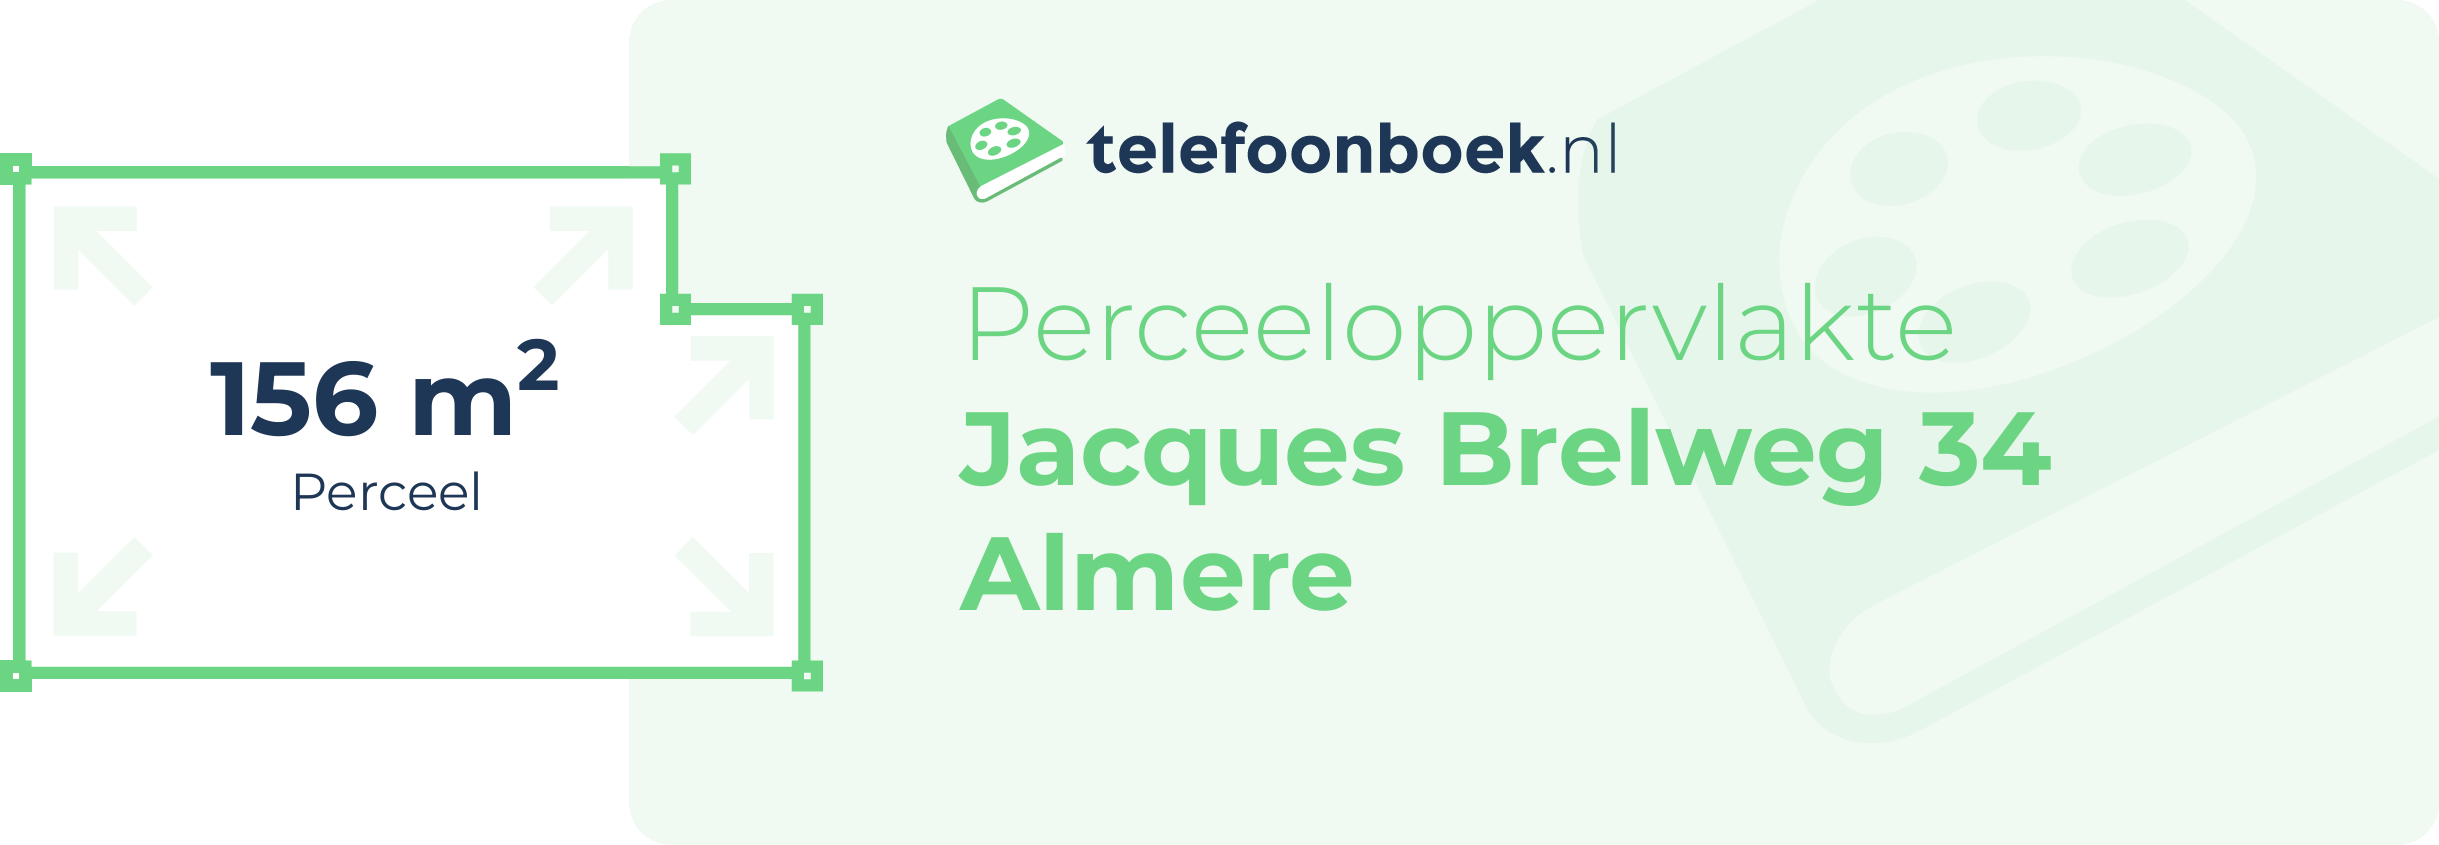 Perceeloppervlakte Jacques Brelweg 34 Almere